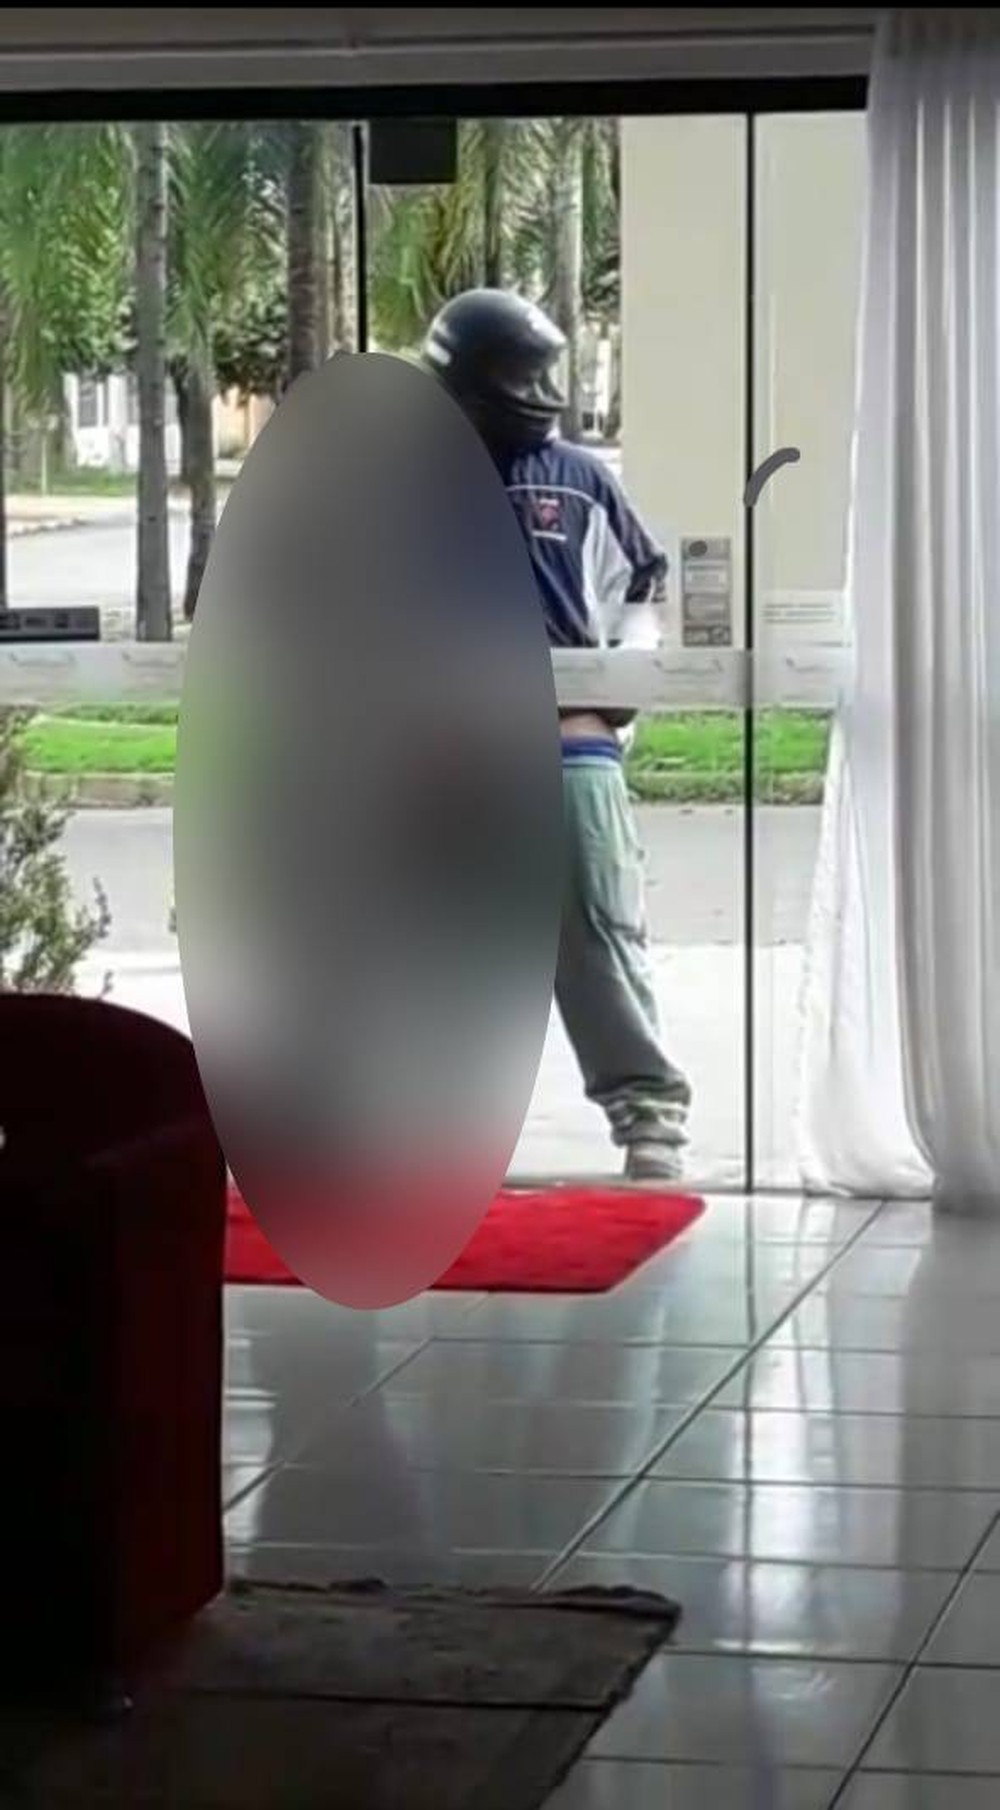 Motoqueiro é preso após se masturbar em vitrine de loja